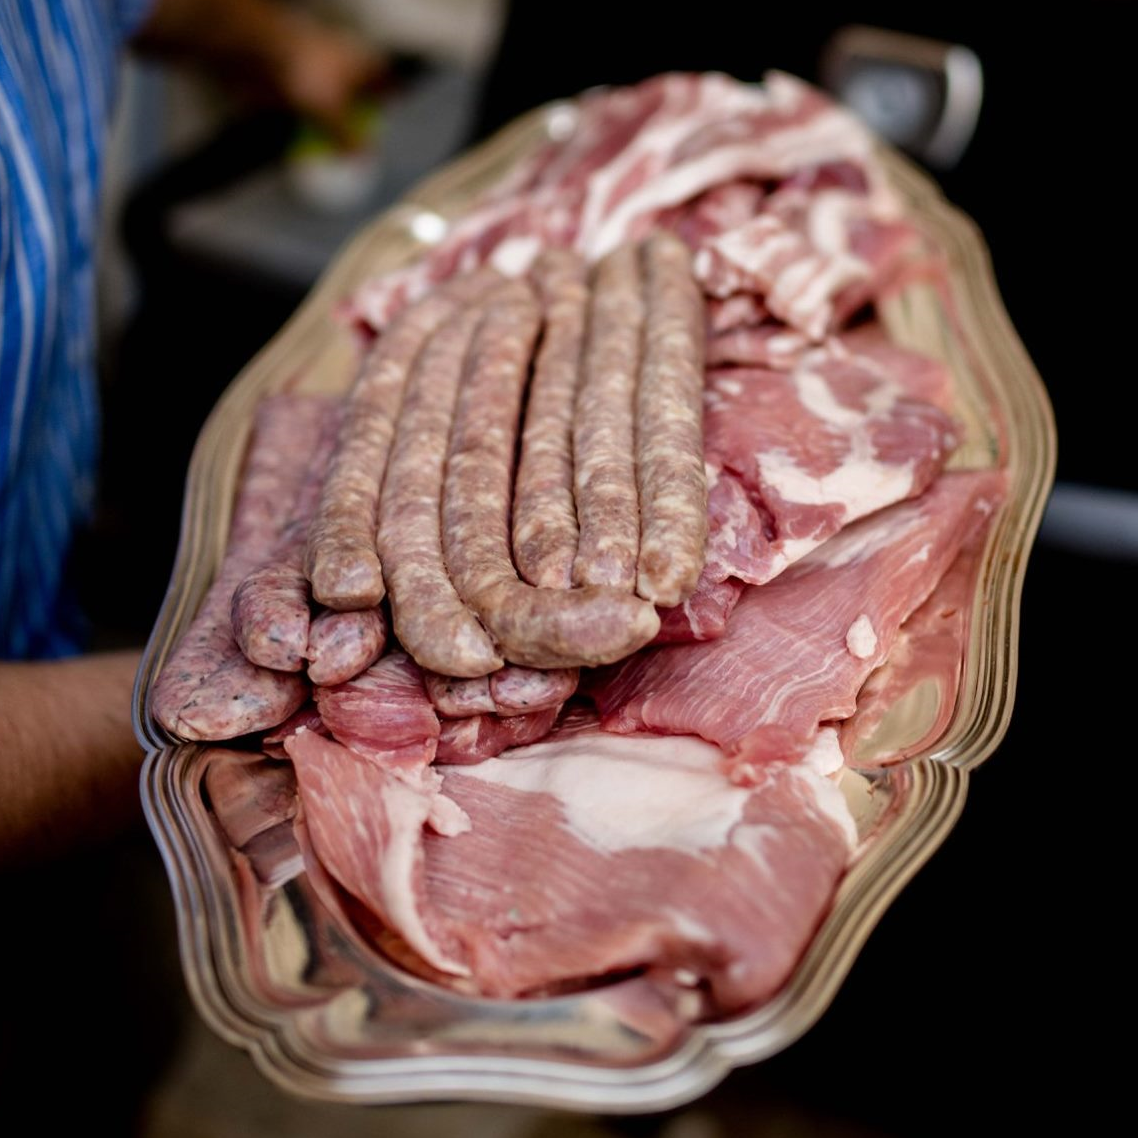 Pack grillade - Cochon fermier du Sud ouest(Duroc) pour 5 personnes